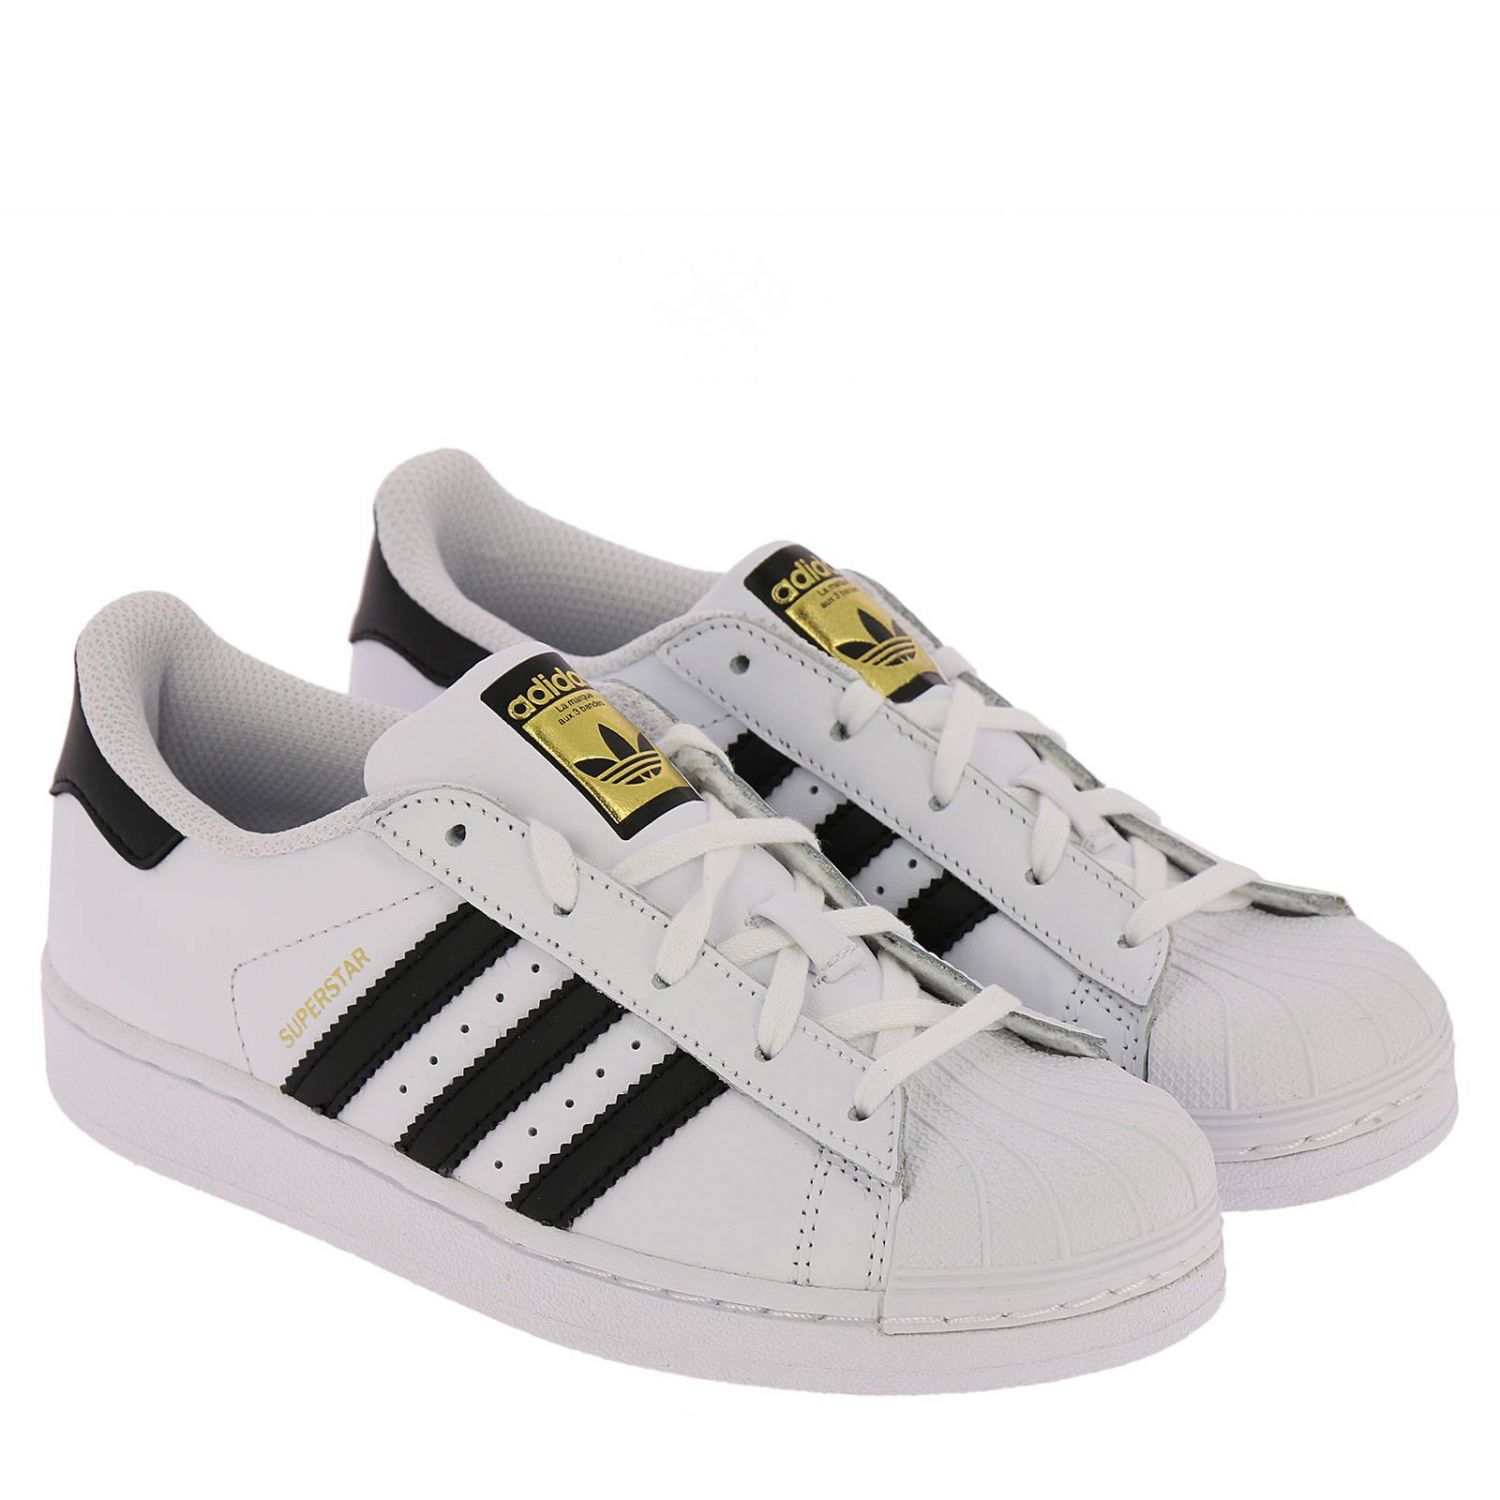 Adidas Originals Outlet: Shoes kids - White | Shoes Adidas Originals ...